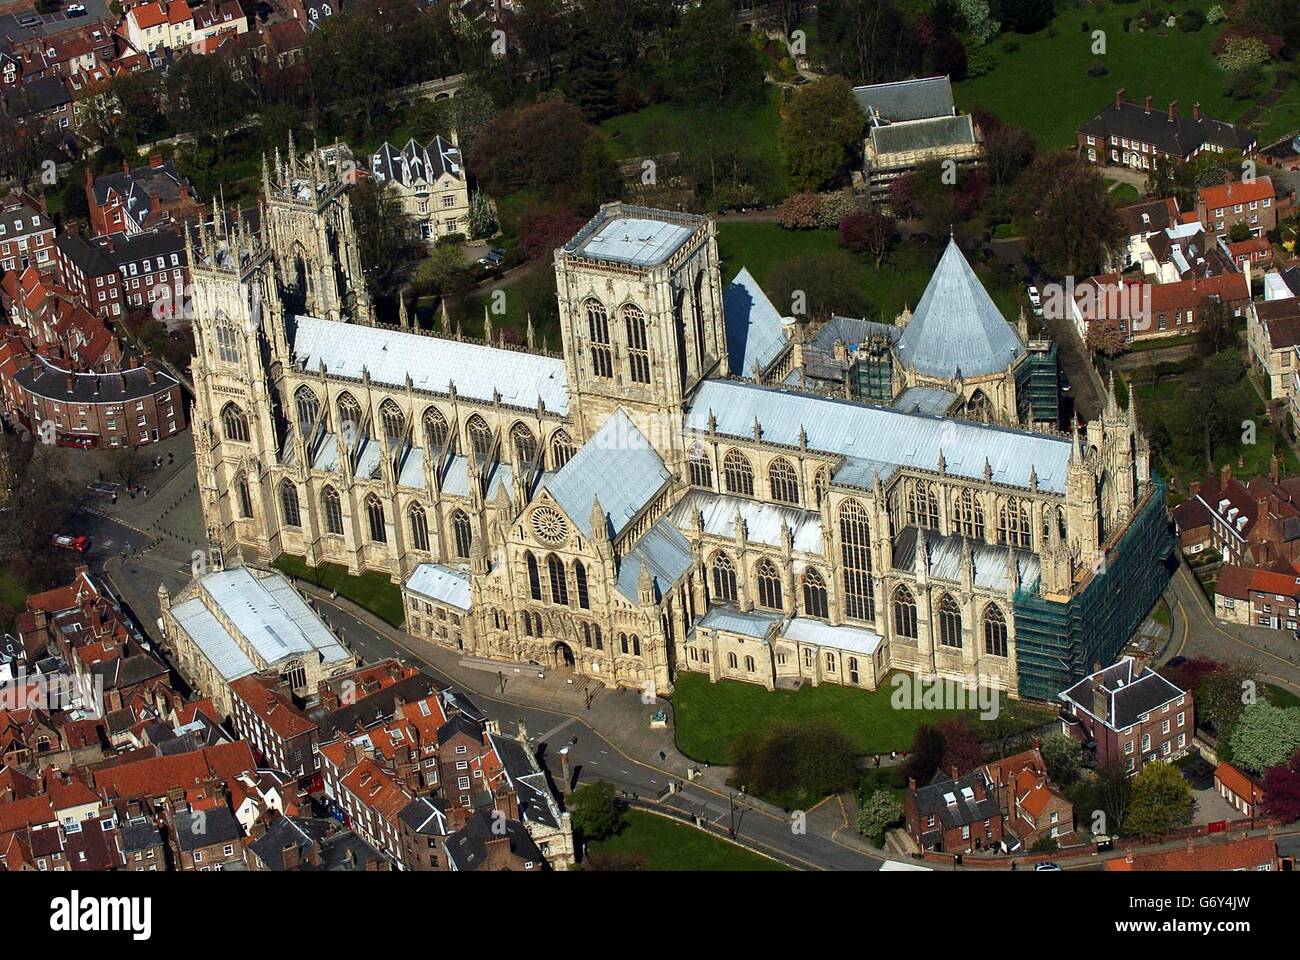 Eine ariel-Ansicht von York Minster, North Yorkshire. 02/11/04: York Minster, wo umstrittene Entry-Gebühren die Kassen seit ihrer Einführung im letzten Sommer um fast 400,000 erhöht haben. Die Mitarbeiter der größten gotischen Kathedrale Nordeuropas sagten, dass die Einführung der Gebühren dazu beigetragen habe, das Defizit des vergangenen Jahres von 612,000 auf 220,000 im Jahr 2003/2004 zu reduzieren. Die Zahlen zeigen, dass 415,000 Besucher 1.5 Millionen Honorare einbringen konnten, wobei die Kathedrale auch von Hinterlassenschaften der Öffentlichkeit profitiert. Stockfoto